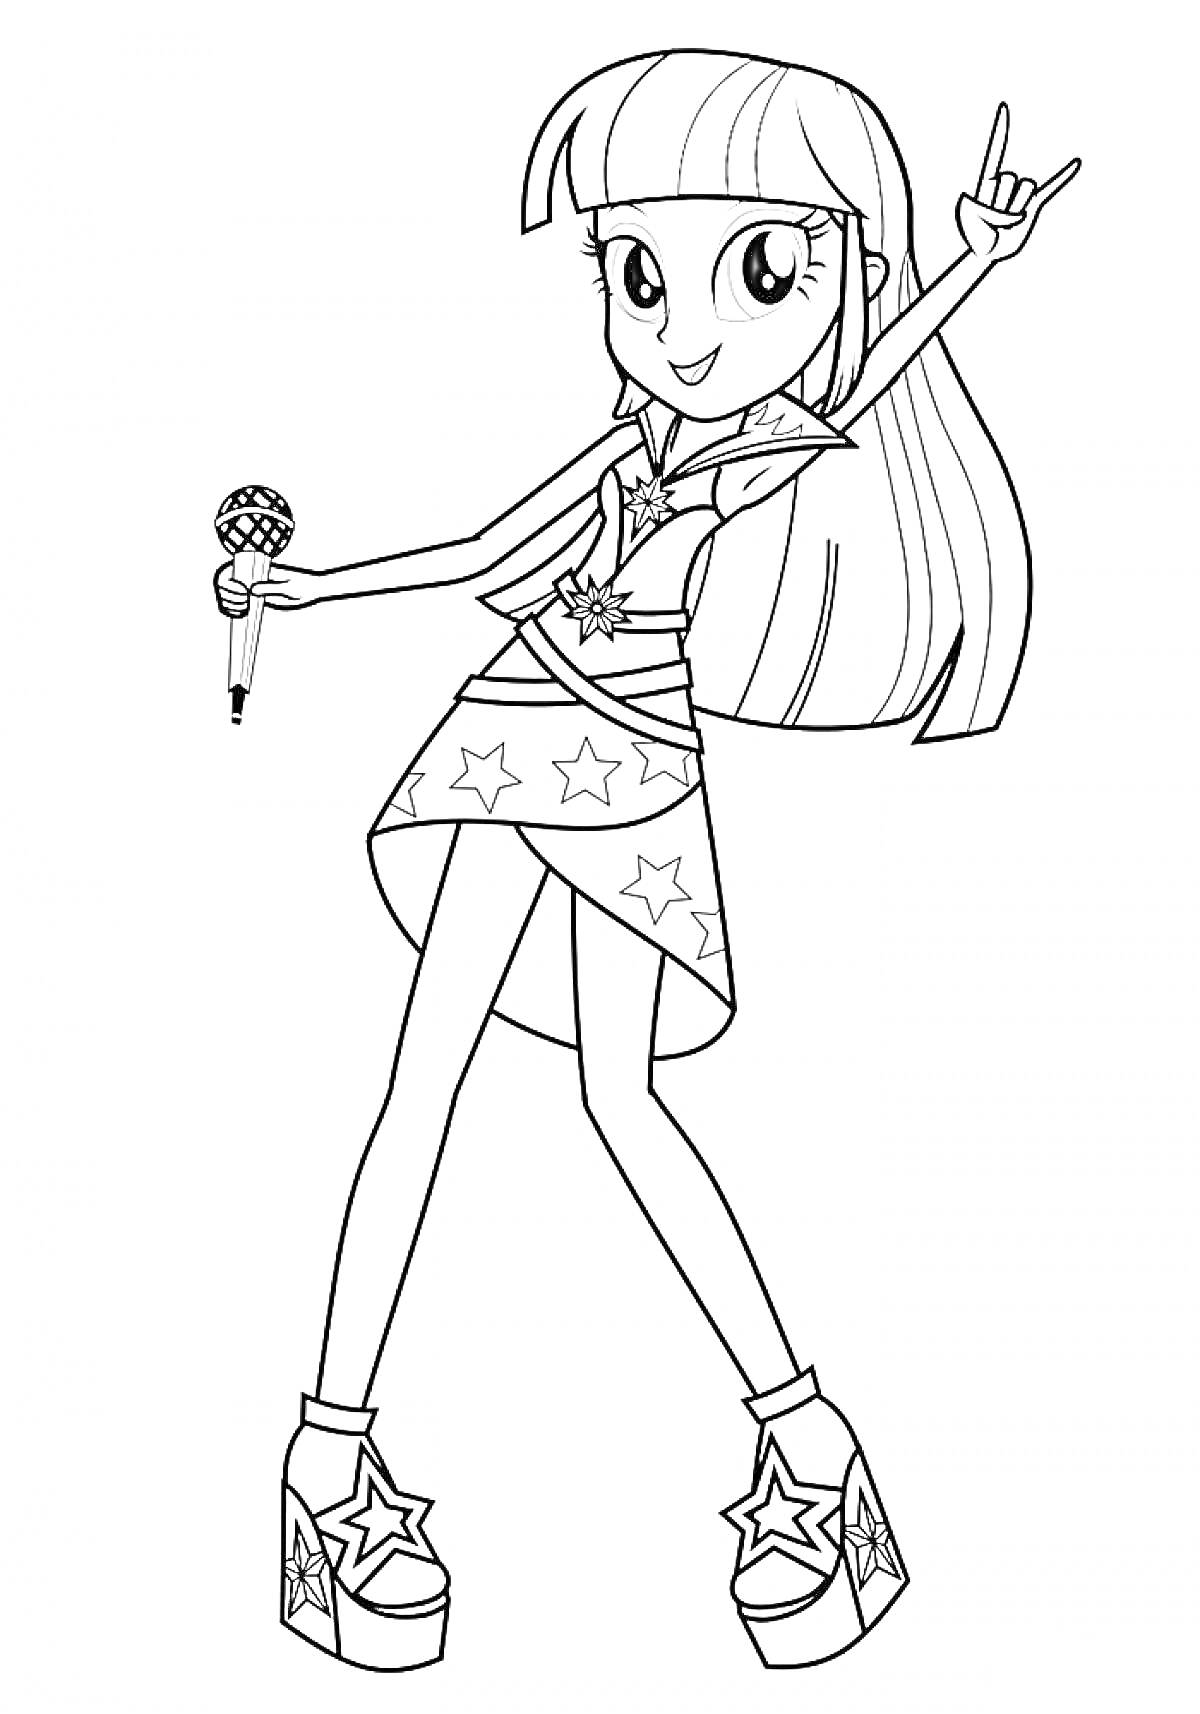 Раскраска Девочка с длинными волосами, в наряде со звёздами и микрофоном, показывает рок-жест